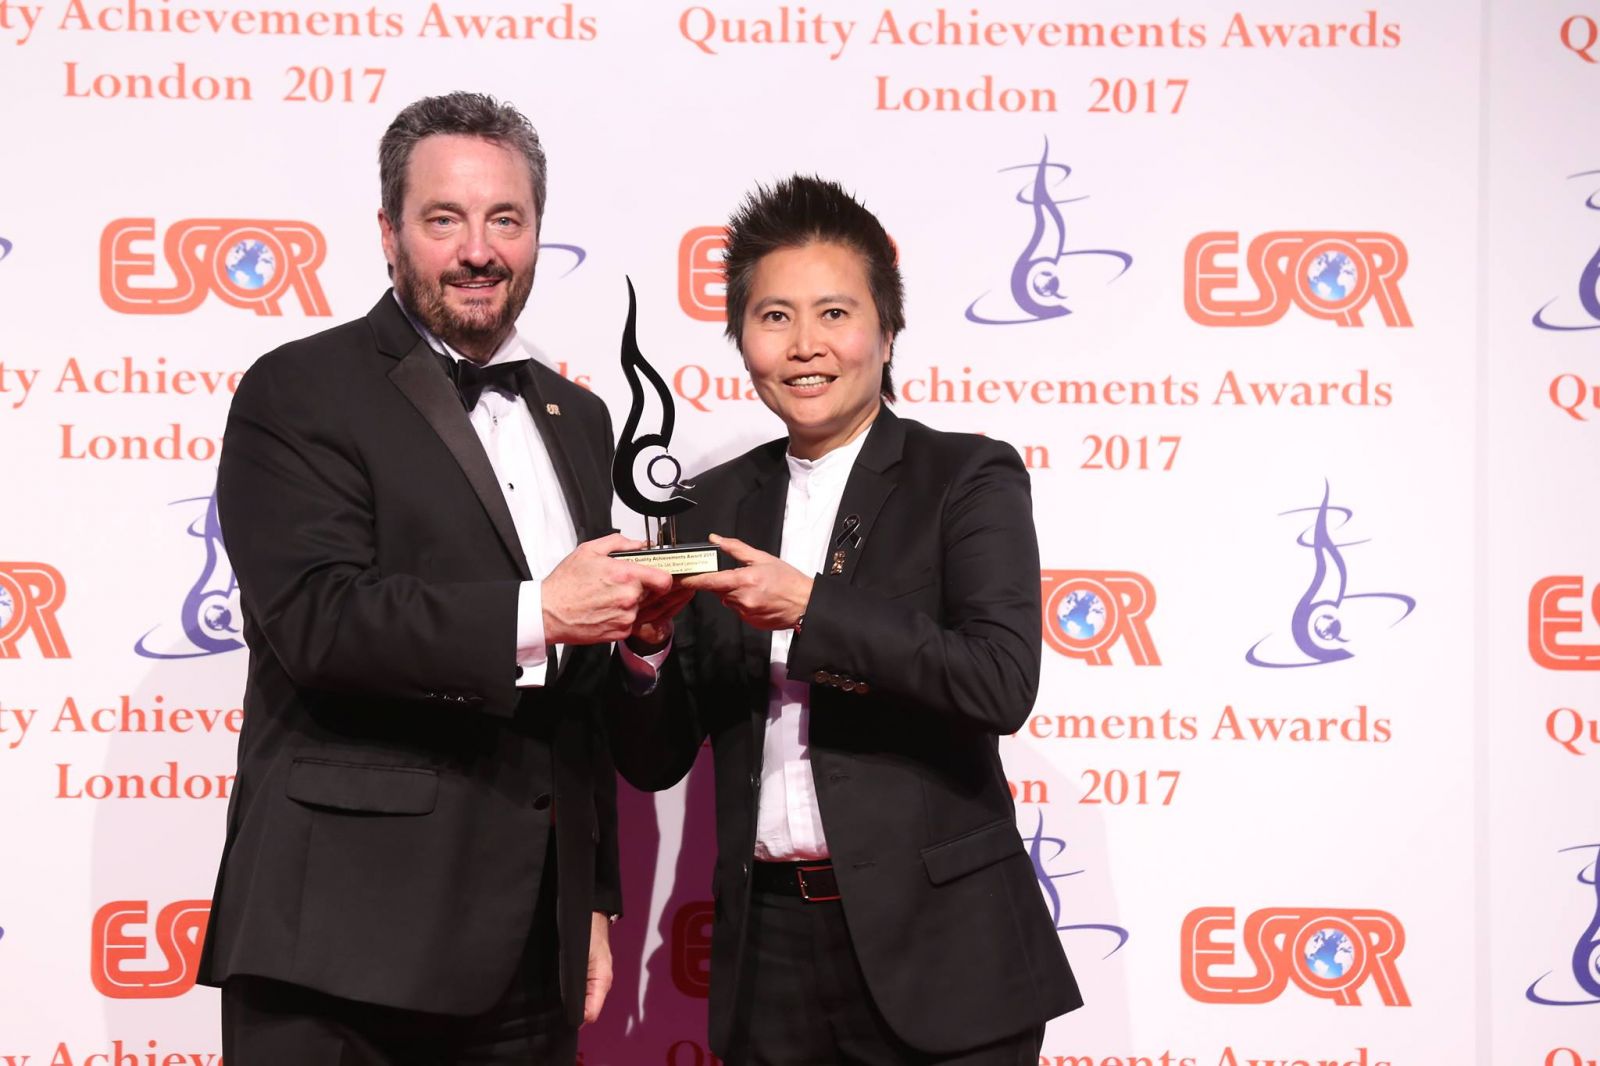  ลามิน่าคว้ารางวัล การบริหารจัดการภายในองค์กรยอดเยี่ยม “ESQR’s Quality Achievements Awards 2017” ณ กรุงลอนดอน